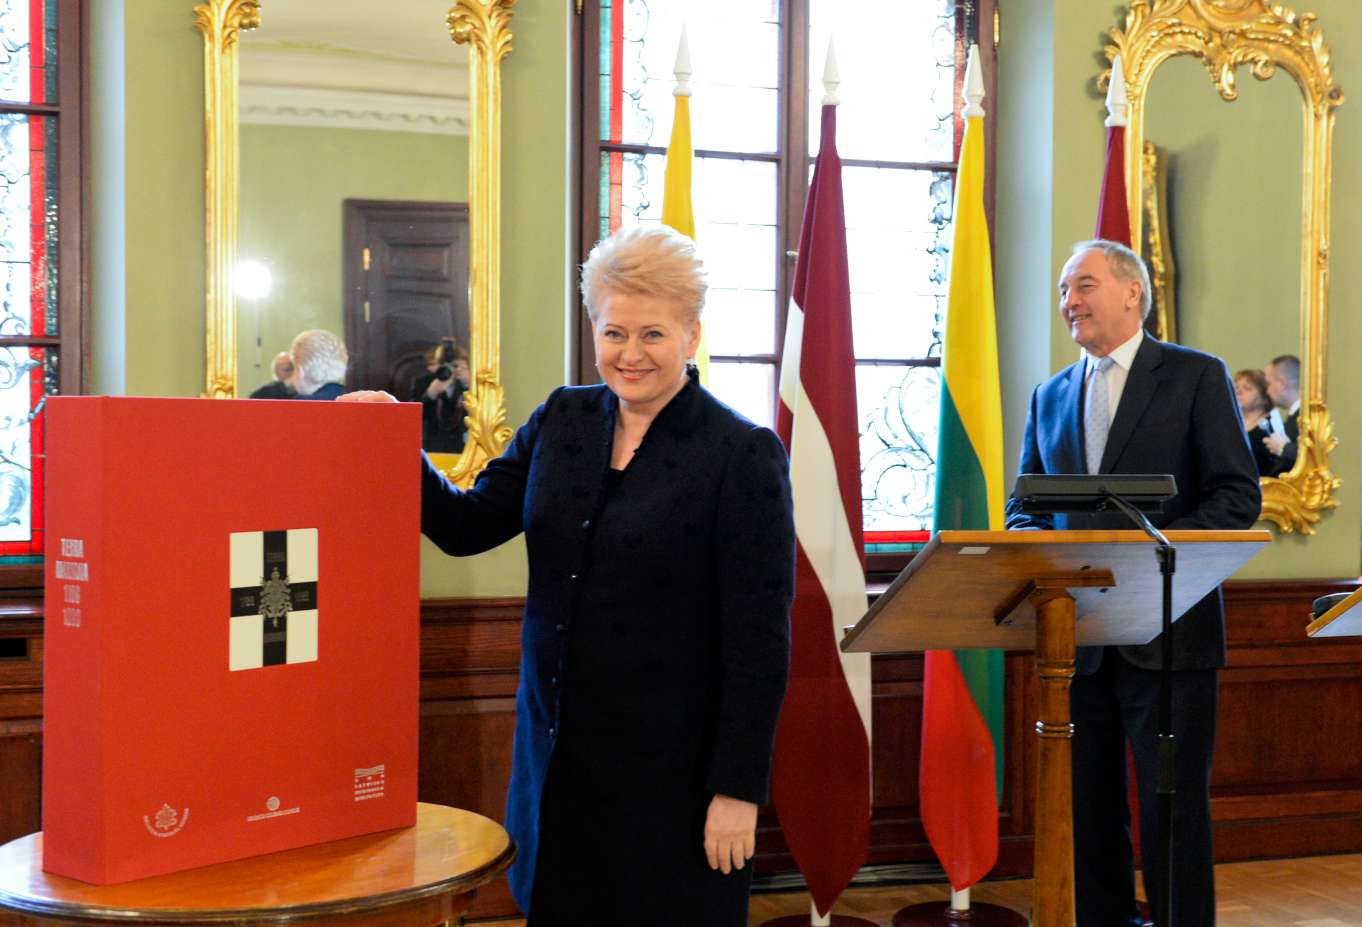 Prezidentas A. Bėrzinis Lietuvos vadovei įteikė istorinio albumo apie Baltijos tautų tarpusavio ryšius „Terra Mariana“ faksimilinę kopiją | lrp.lt nuotr.